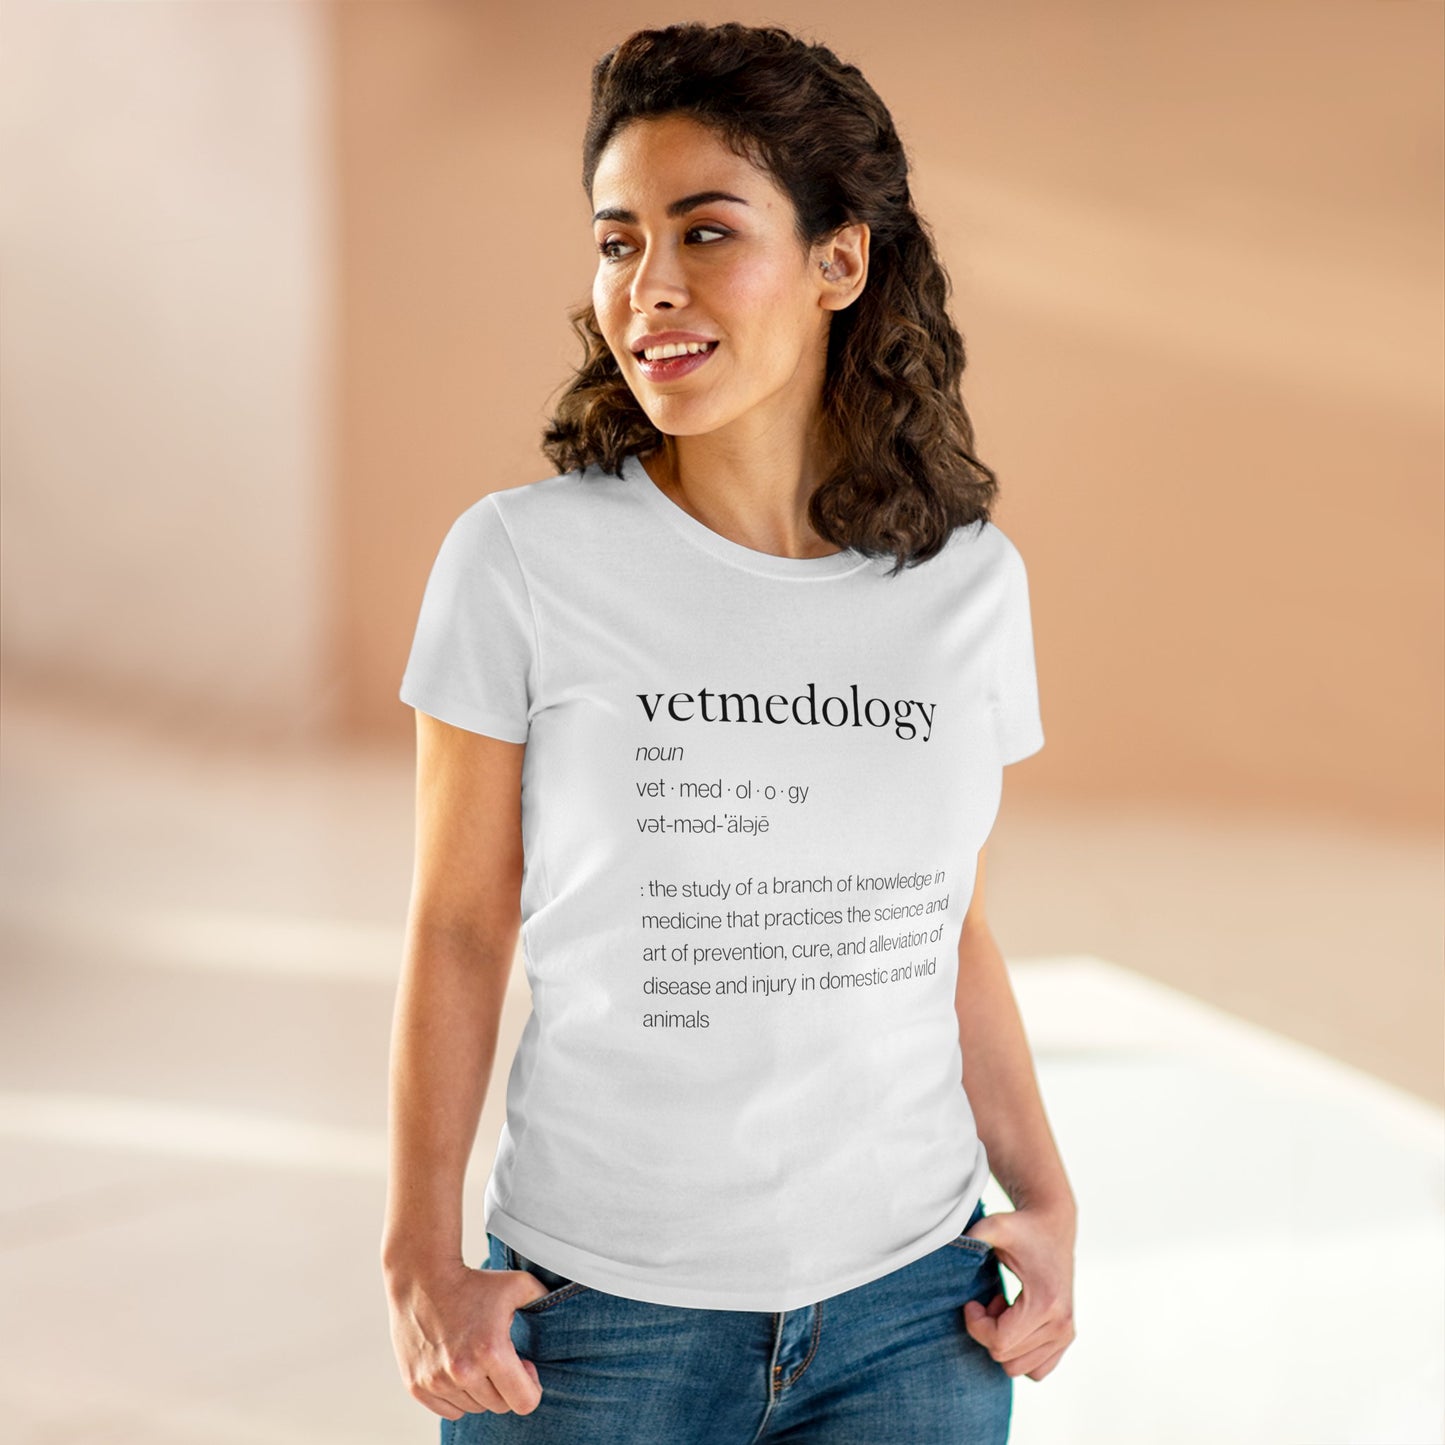 vetmedology Definition Women's Midweight Cotton Tee